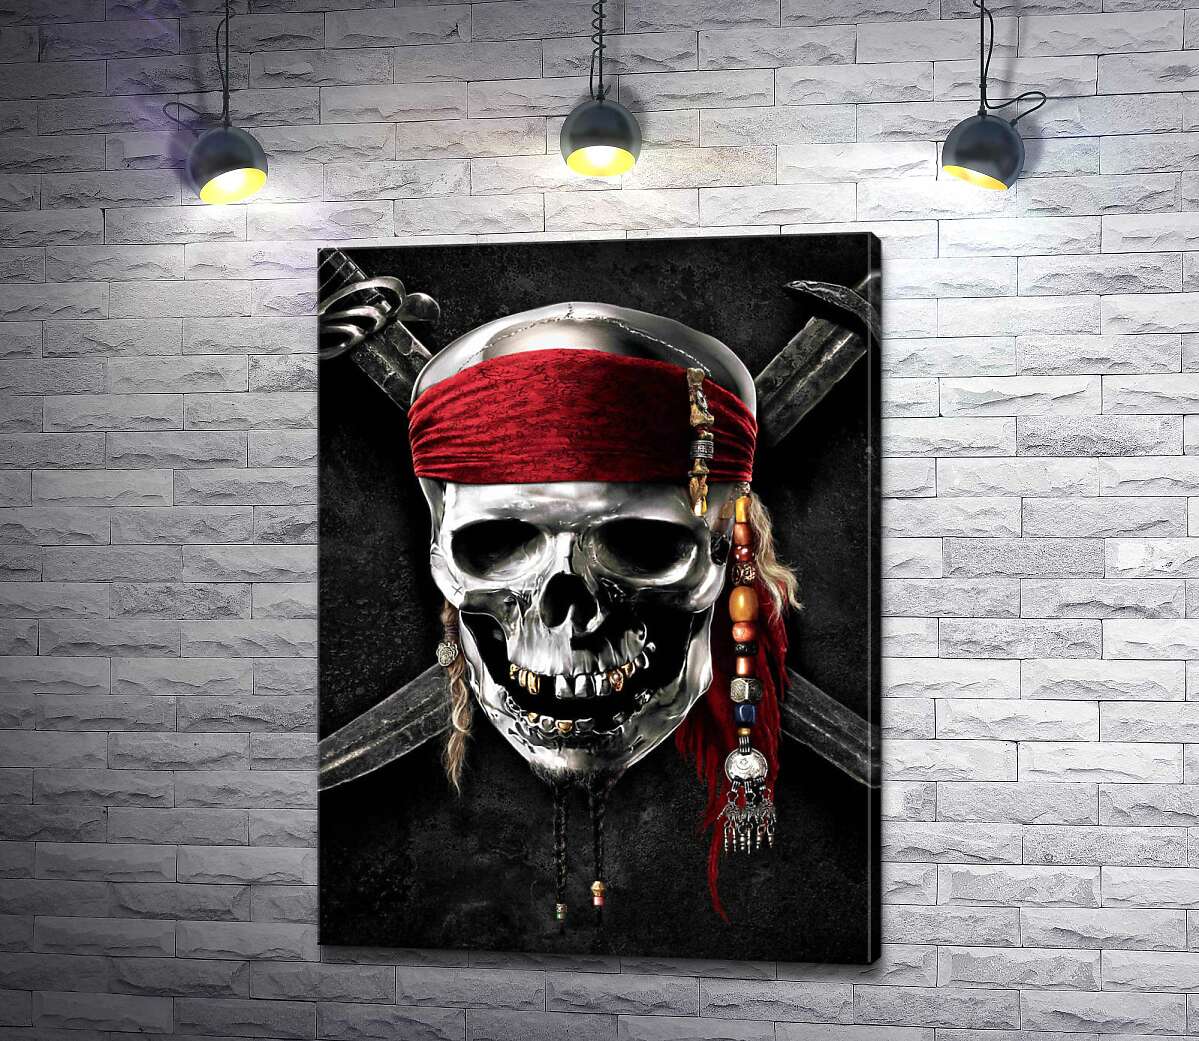 картина Славнозвісний череп Джека Горобця (Jack Sparrow) на постері до фільму "Пірати Карибського моря" (Pirates of the Caribbean)